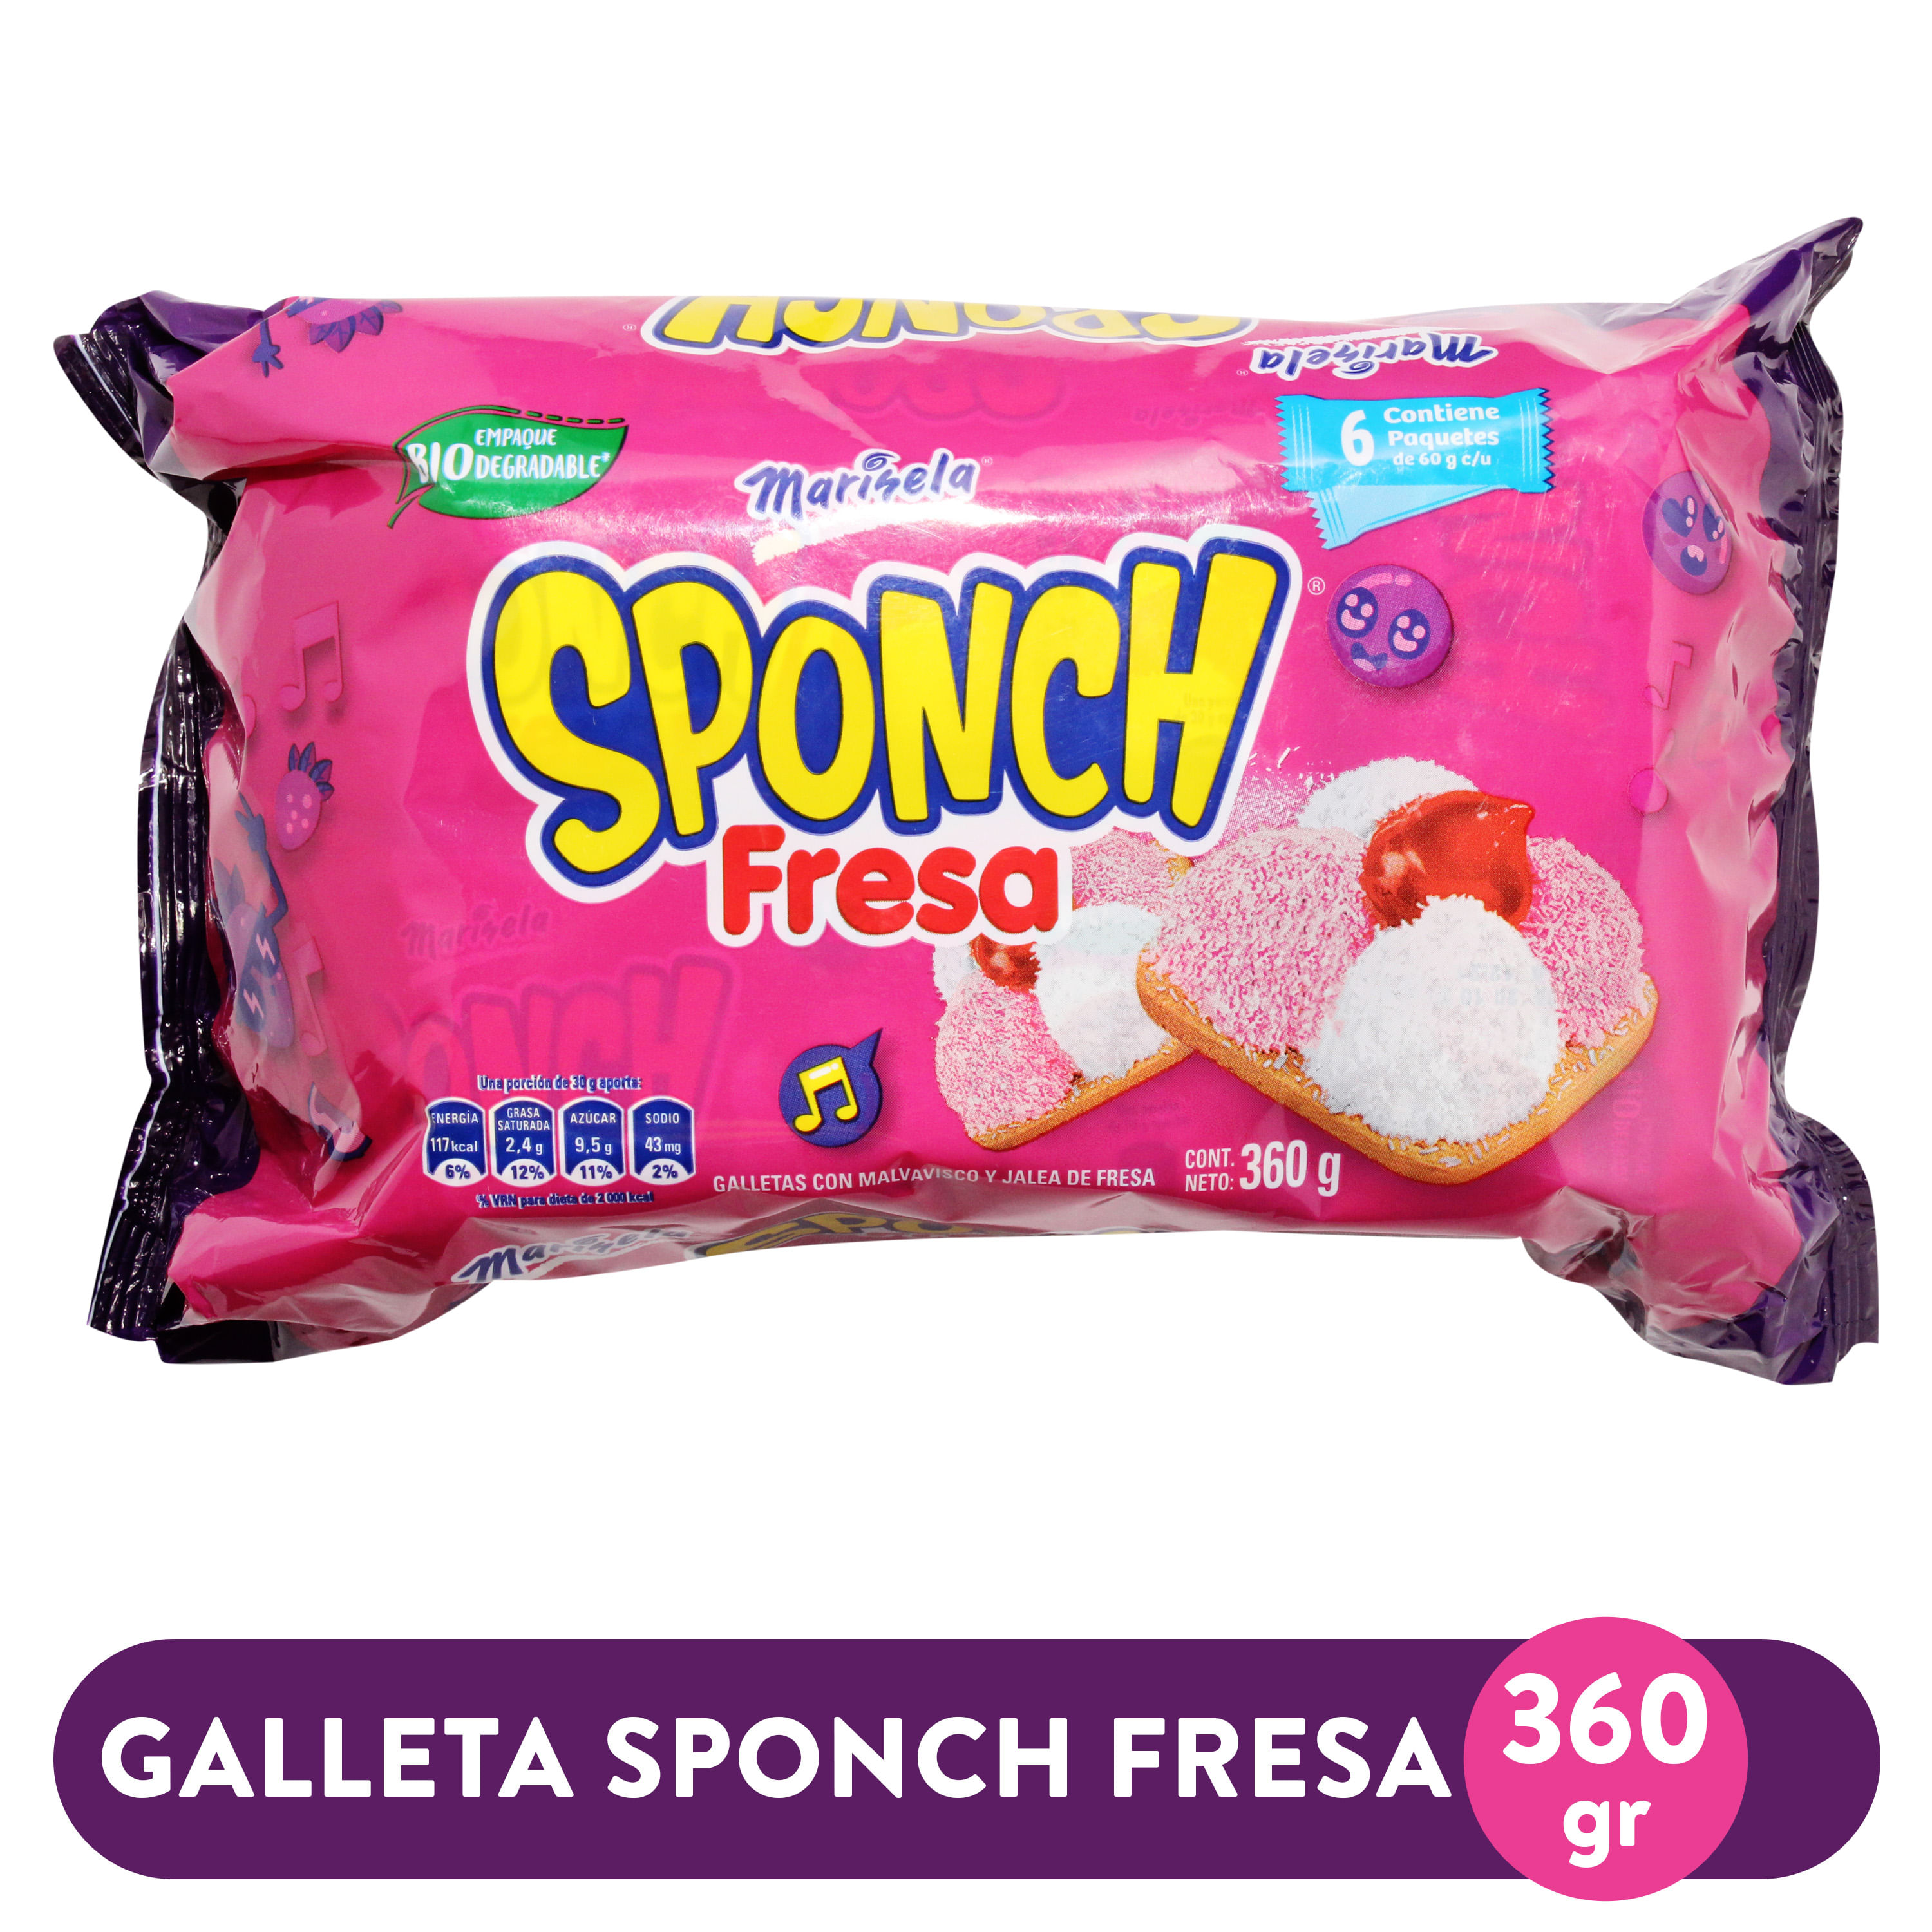 Galleta-Marinela-Sponch-Fresa-360gr-1-30469